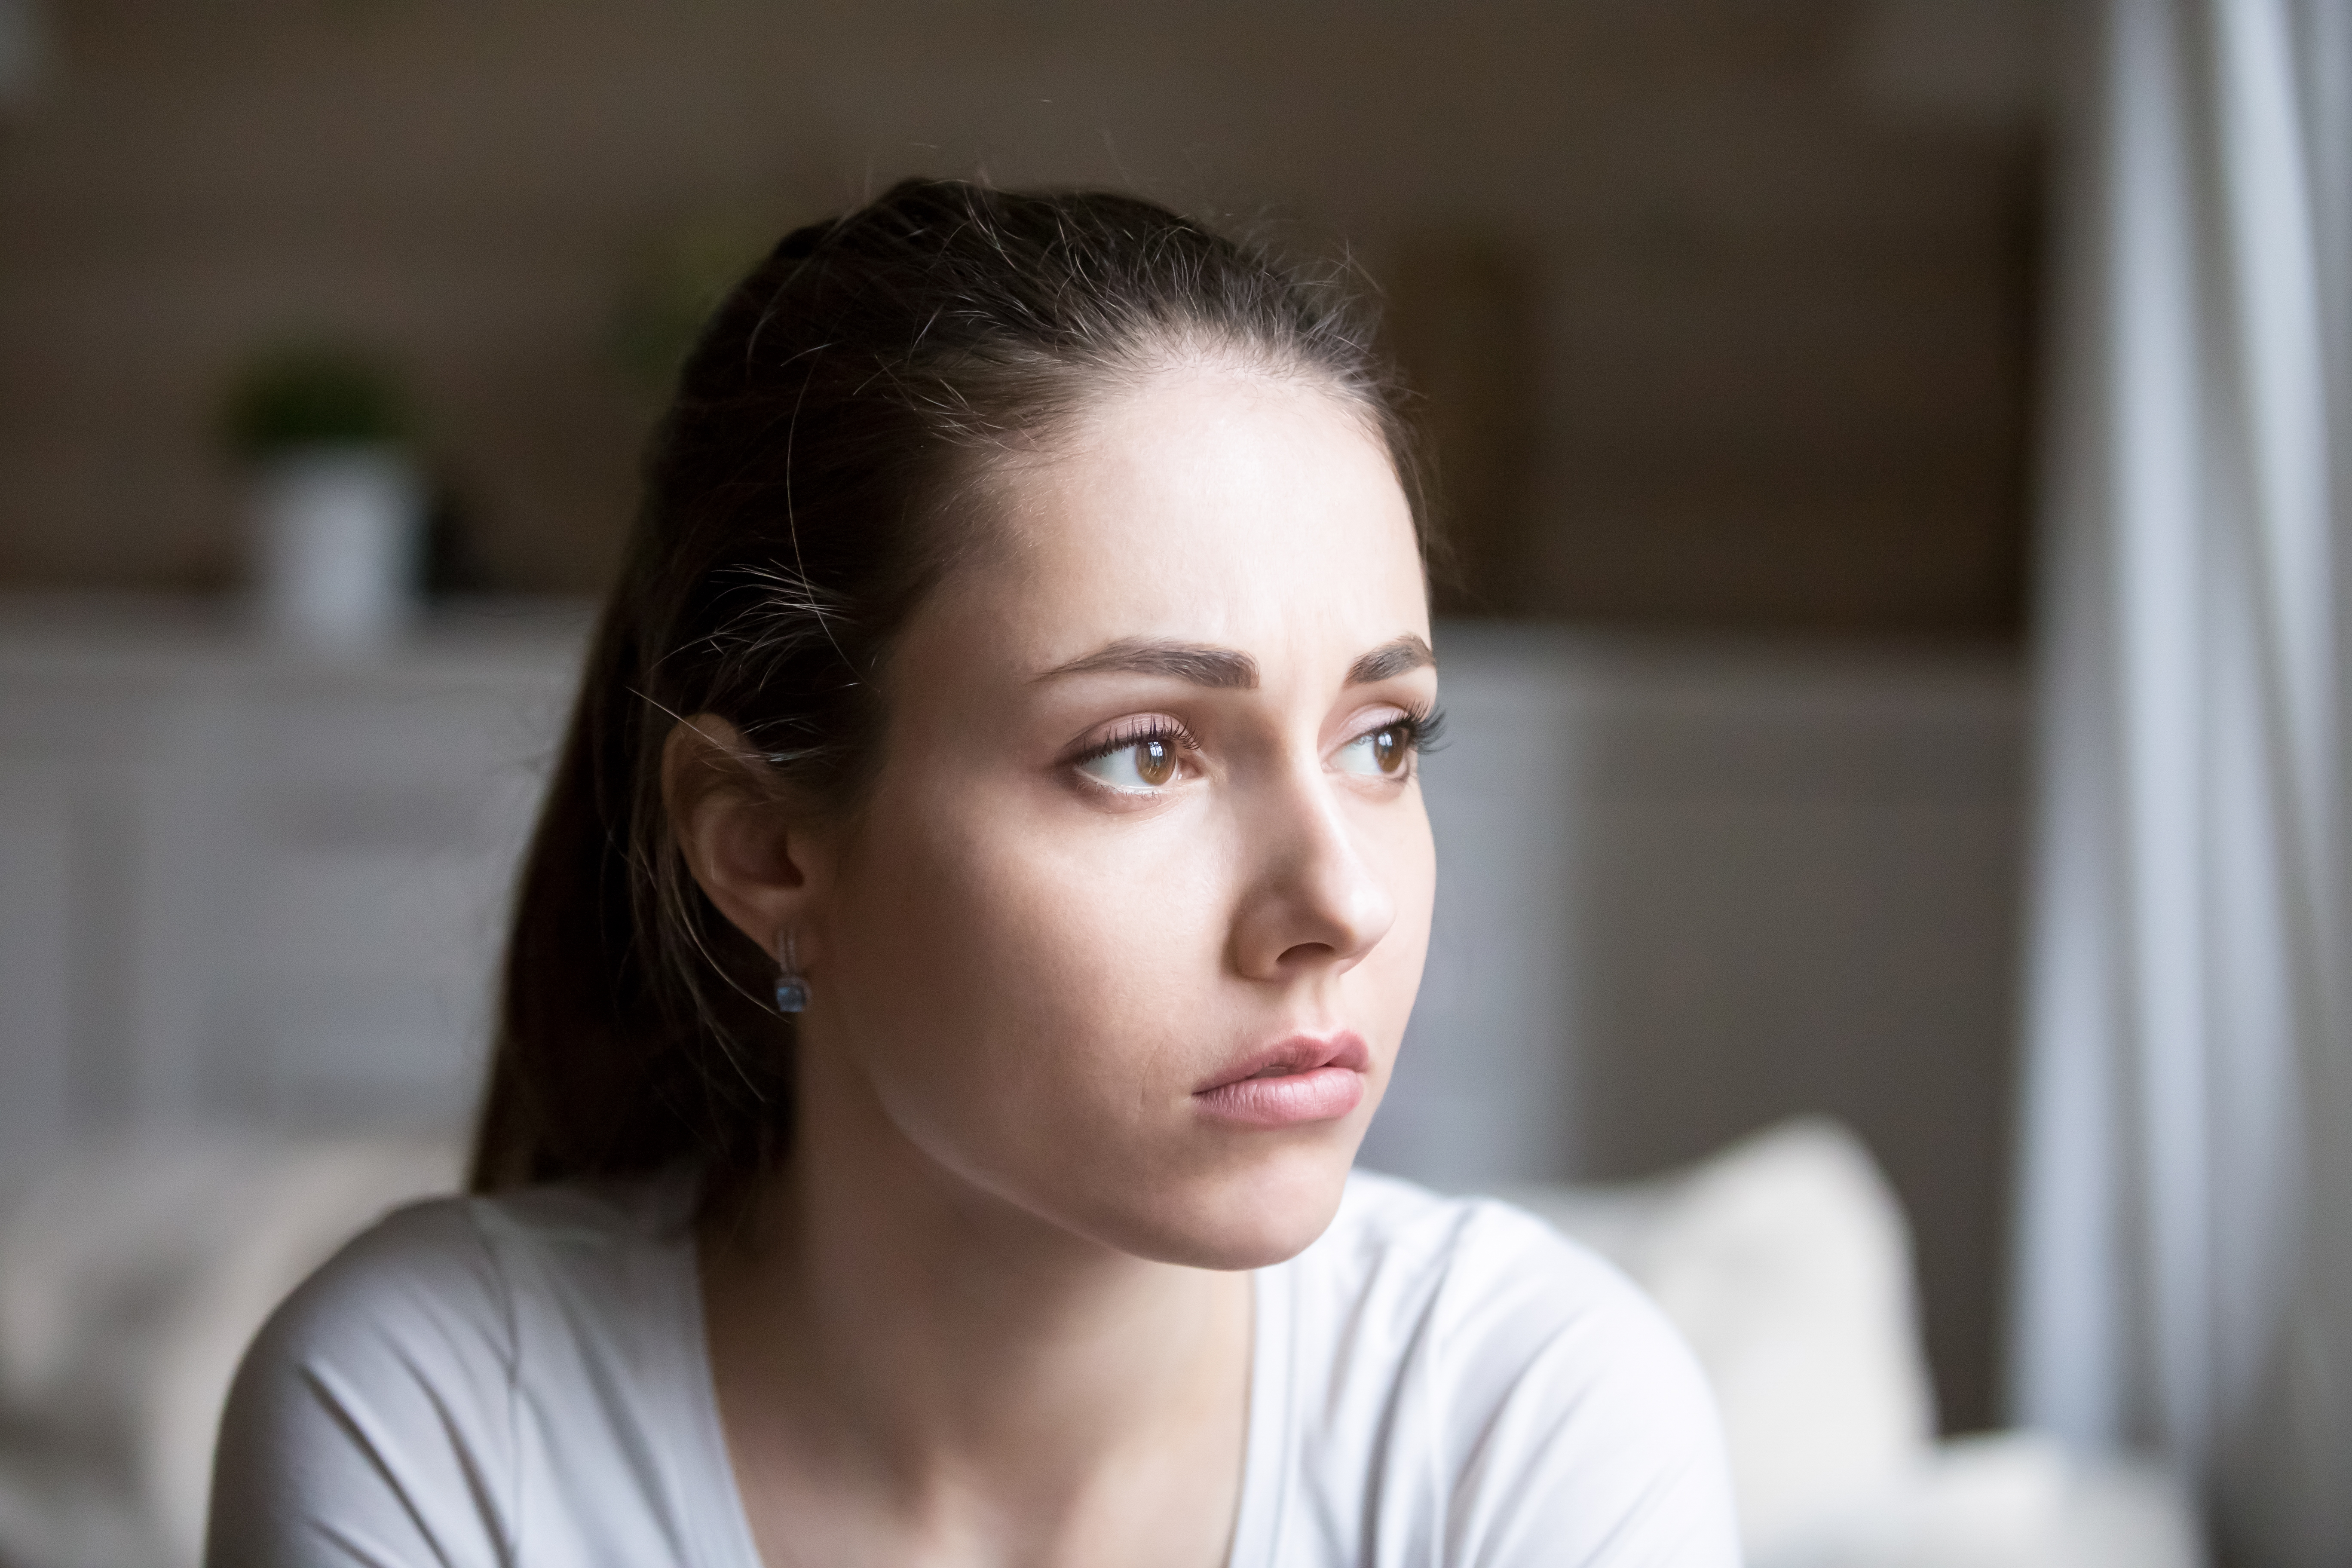 Junge Frau mit traurigem Blick | Quelle: Shutterstock